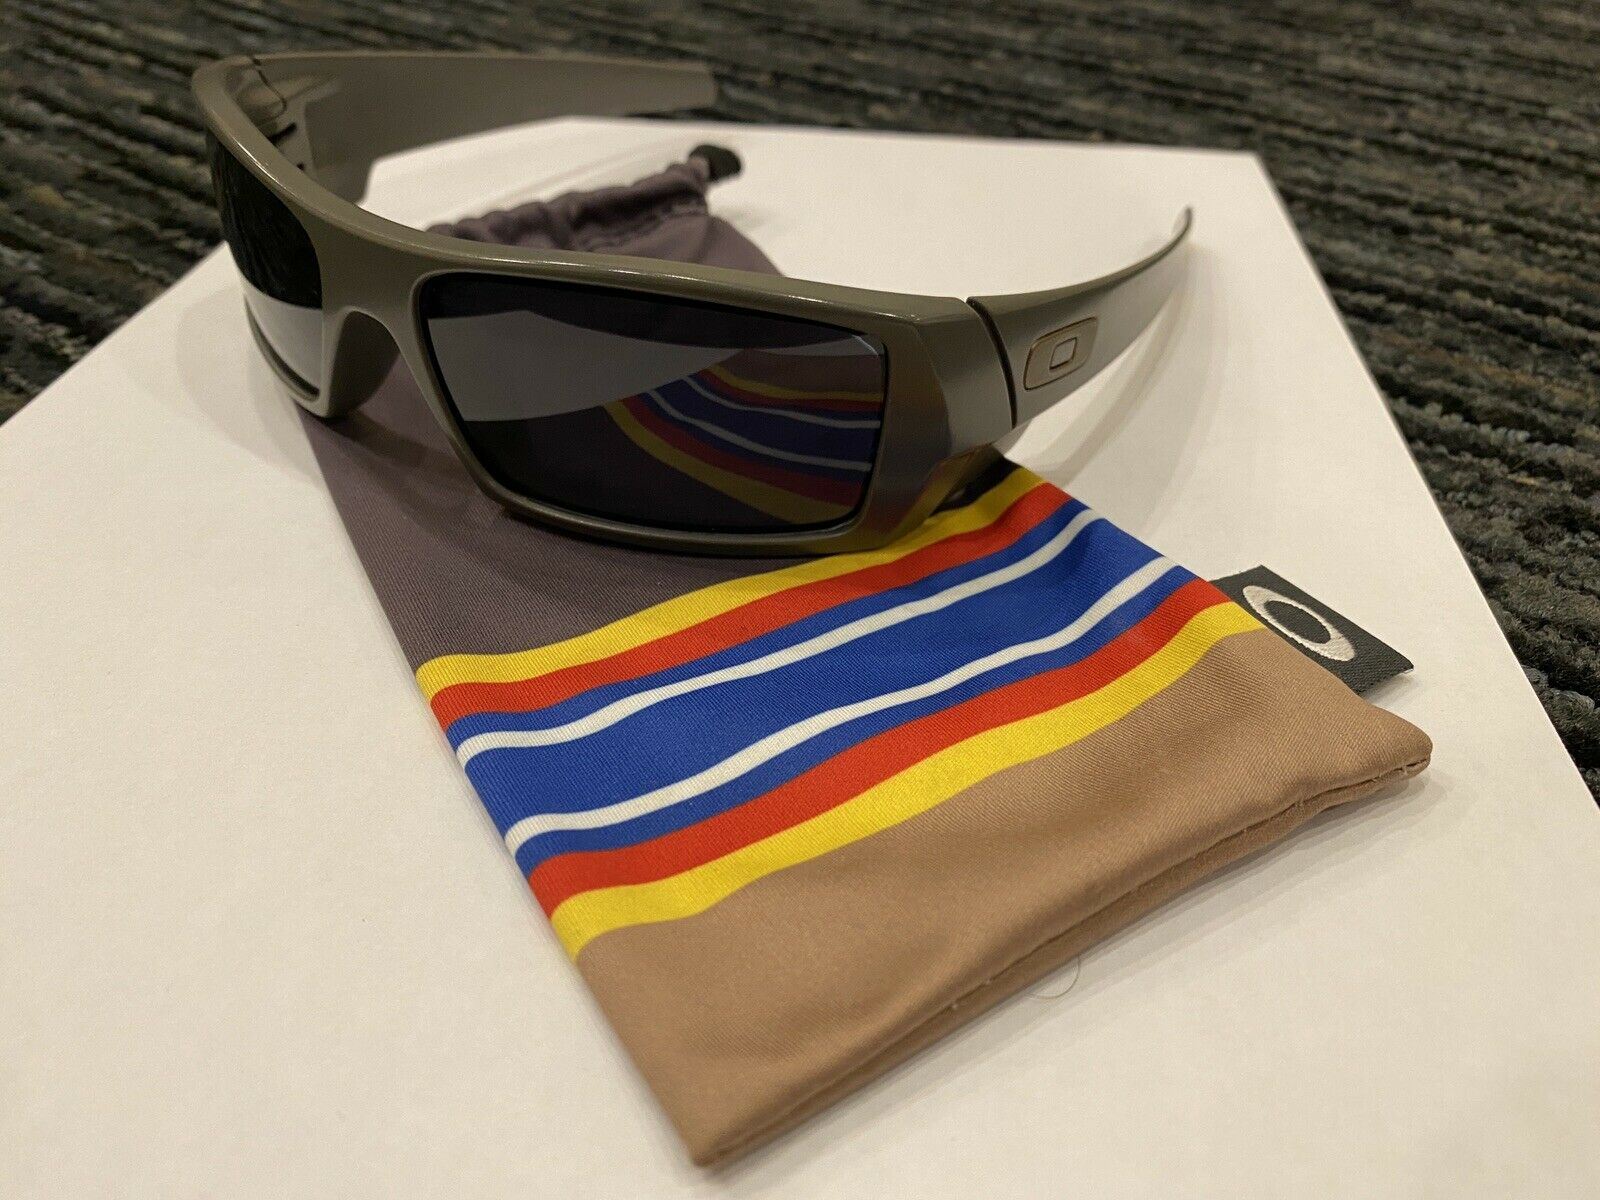 OAKLEY Sunglasses GASCAN Army Ribbon Limited edition Grey GWOTs Global War On